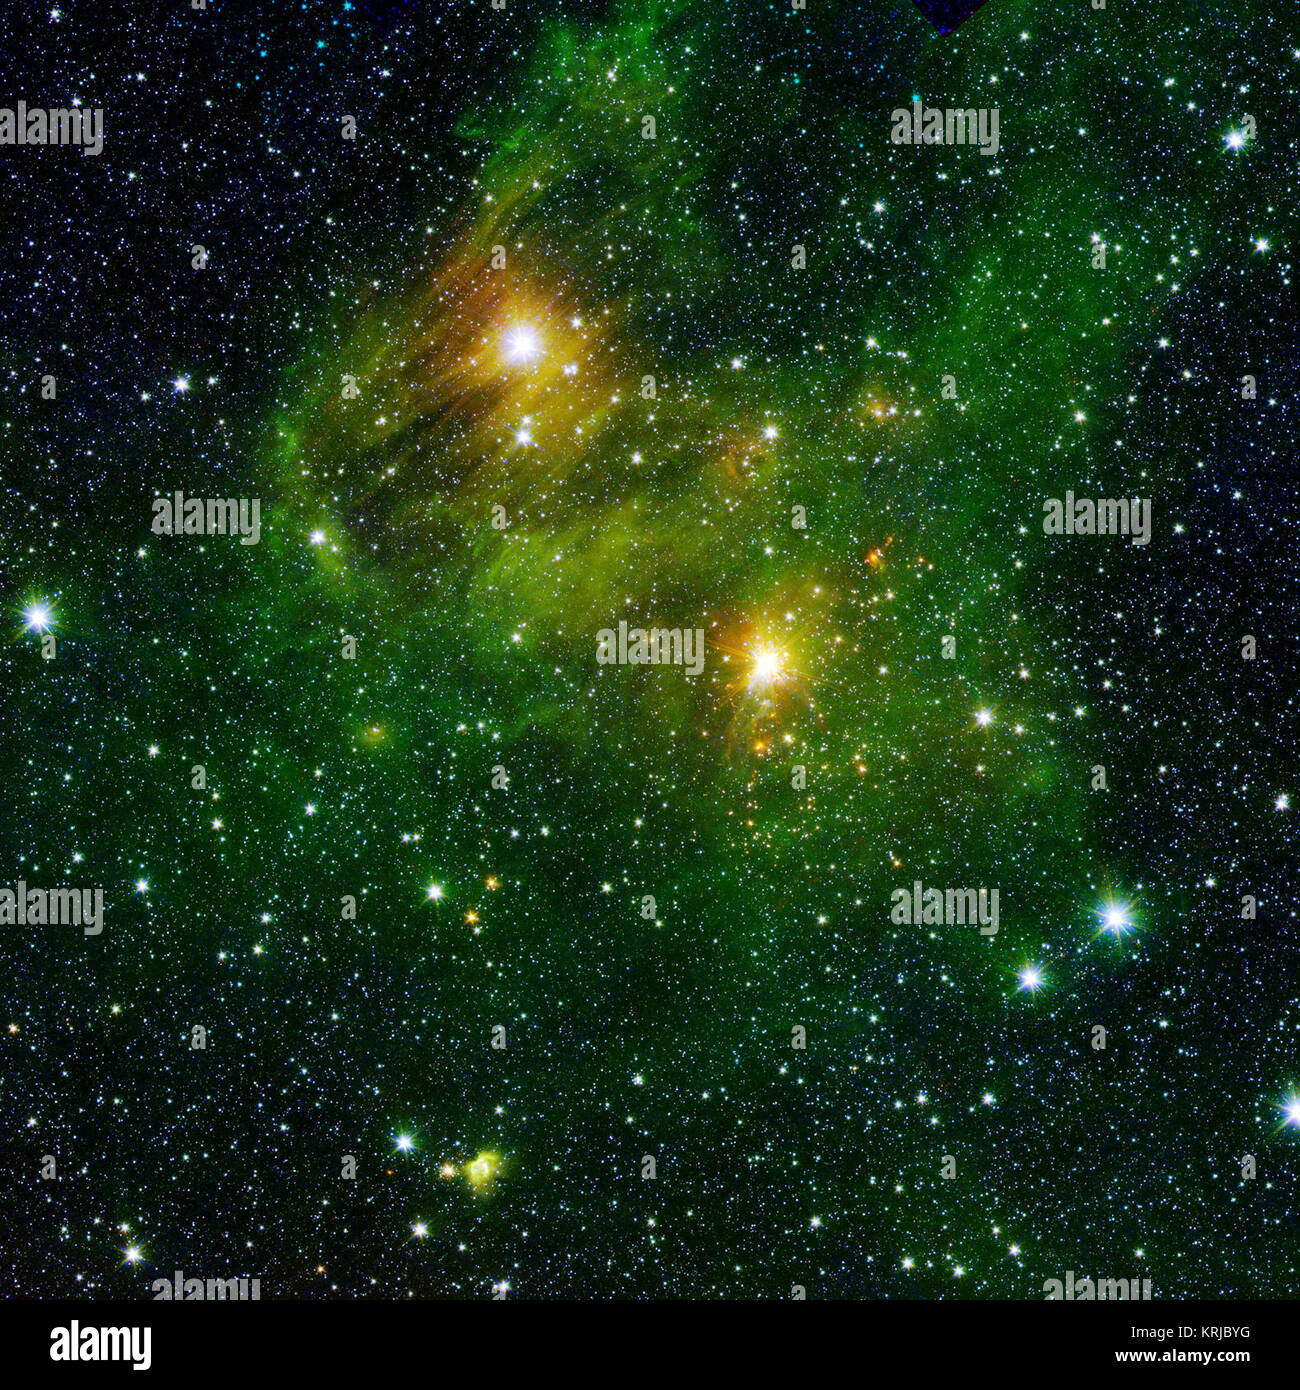 Zwei extrem helle Sterne eine grünliche Nebelschwaden in dieser und anderen Bildern Aufleuchten von der neuen Blick 360 Umfrage. Dieser Nebel besteht aus Wasserstoff und Kohlenstoff Mittel, polyzyklische aromatische Kohlenwasserstoffe (PAK), die hier auf der Erde in den rußigen Fahrzeug Auspuff und auf Holzkohle Grills zu finden sind. Im Raum, Pak Form in die dunklen Wolken, die Sterne geben. Diese Moleküle können Astronomen die Peripherien der Gaswolken zu visualisieren und deren Strukturen im Detail studieren. Pak sind nicht wirklich "grün" Eine repräsentative Farbkodierung in diese Bilder können Wissenschaftler beobachten Pak glo Stockfoto